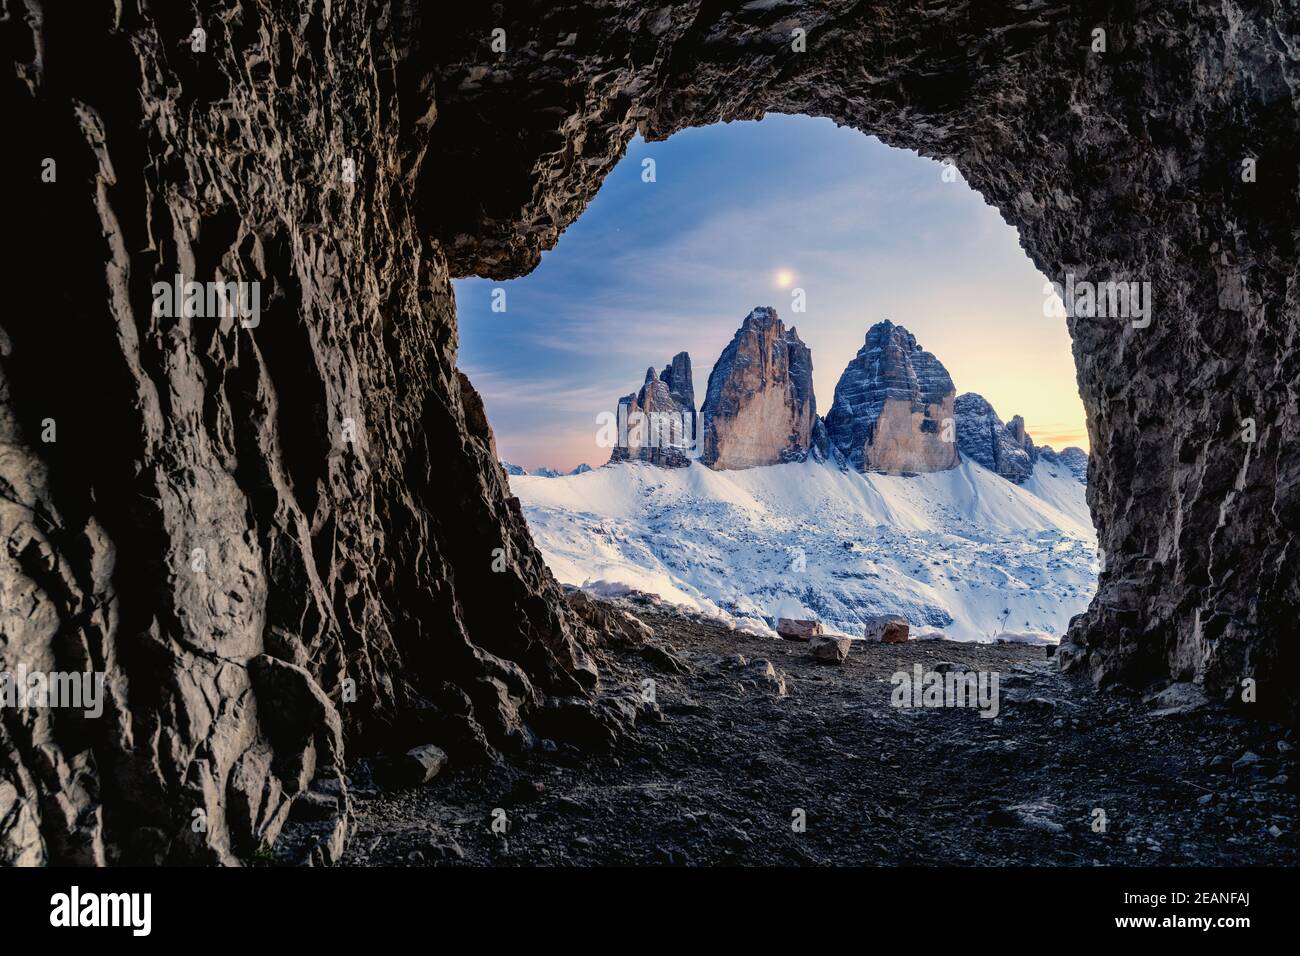 Tre Cime di Lavaredo illuminato dalla luna vista dall'apertura in rocce di una grotta di guerra, Dolomiti di Sesto, Trentino-Alto Adige, Italia, Europa Foto Stock